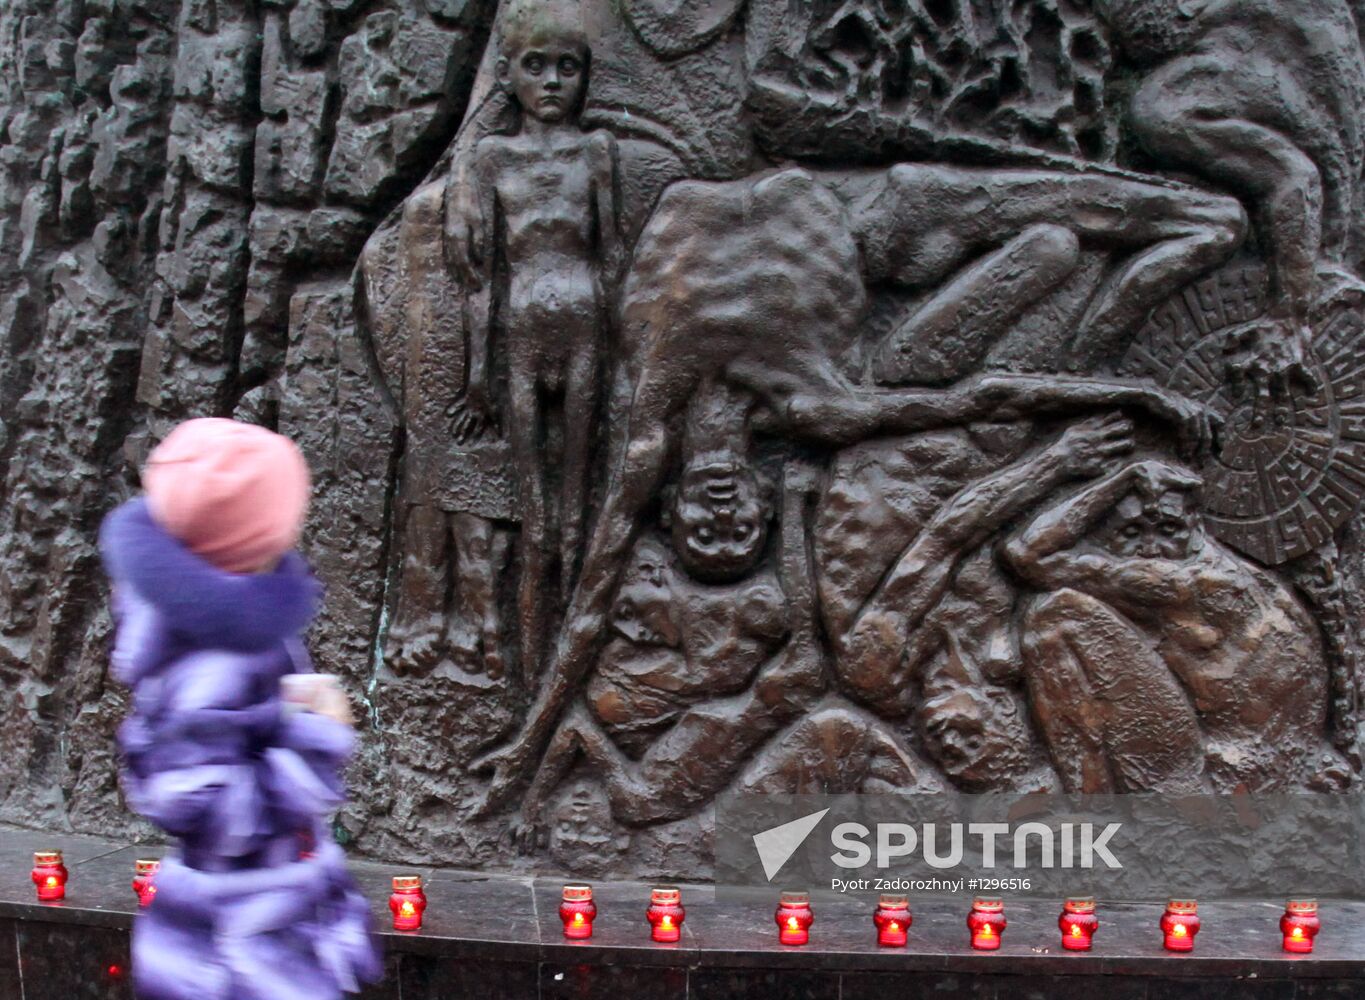 Holodomor Remembrance Day in Lvov